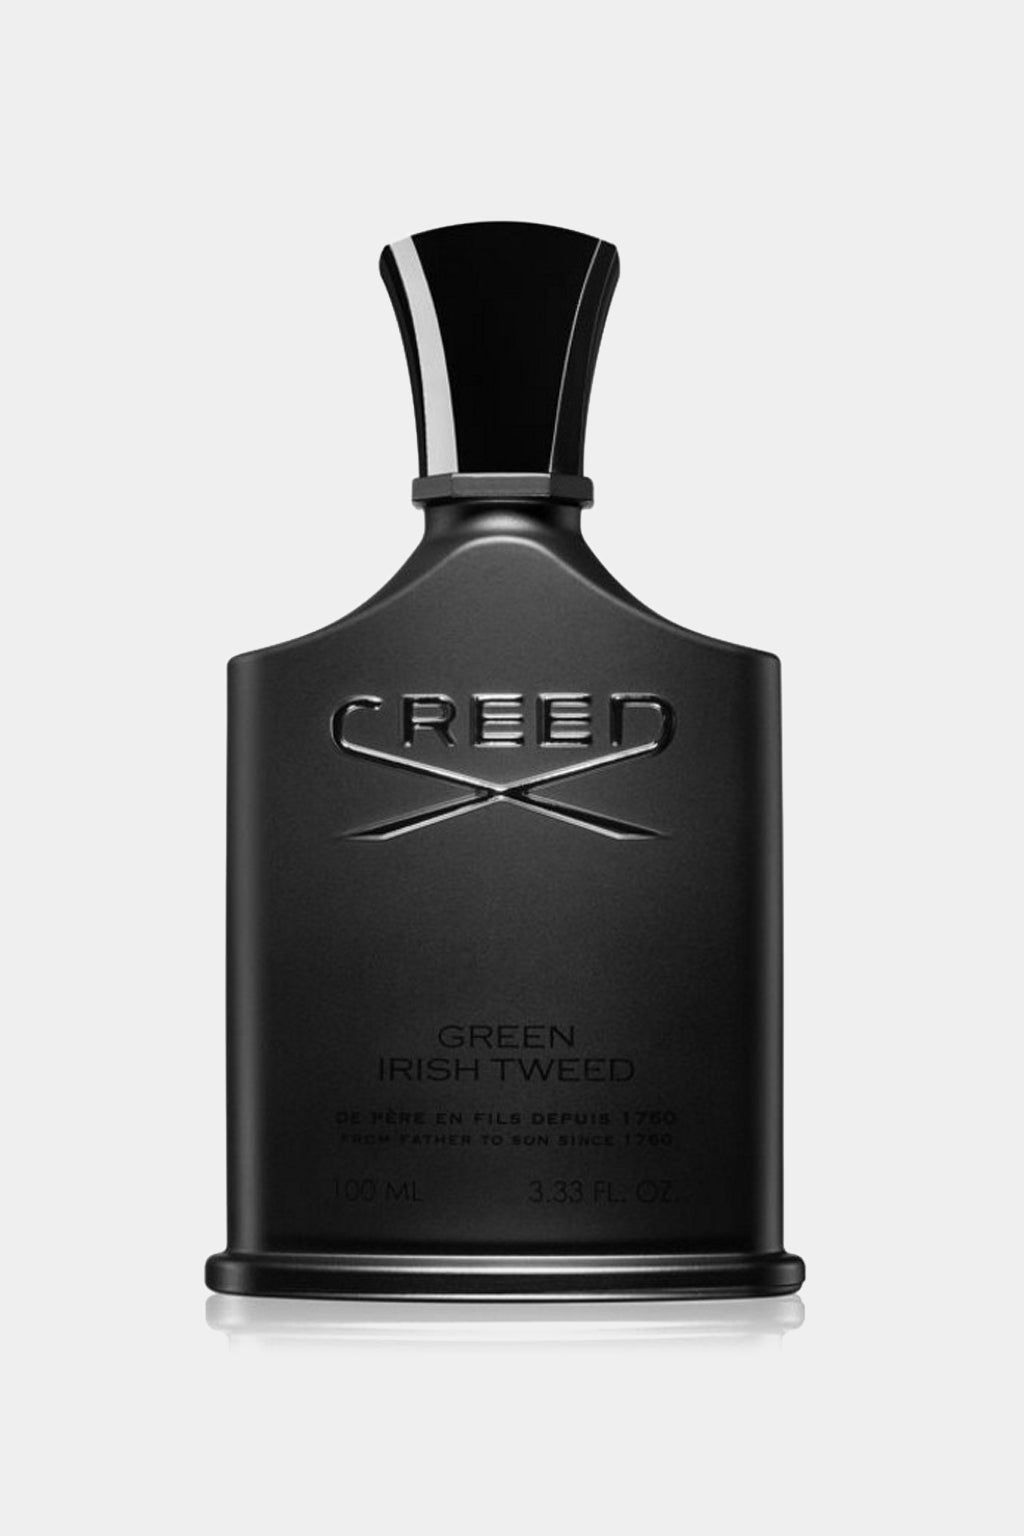 Creed - Green Irish Tweed Eau de Parfum